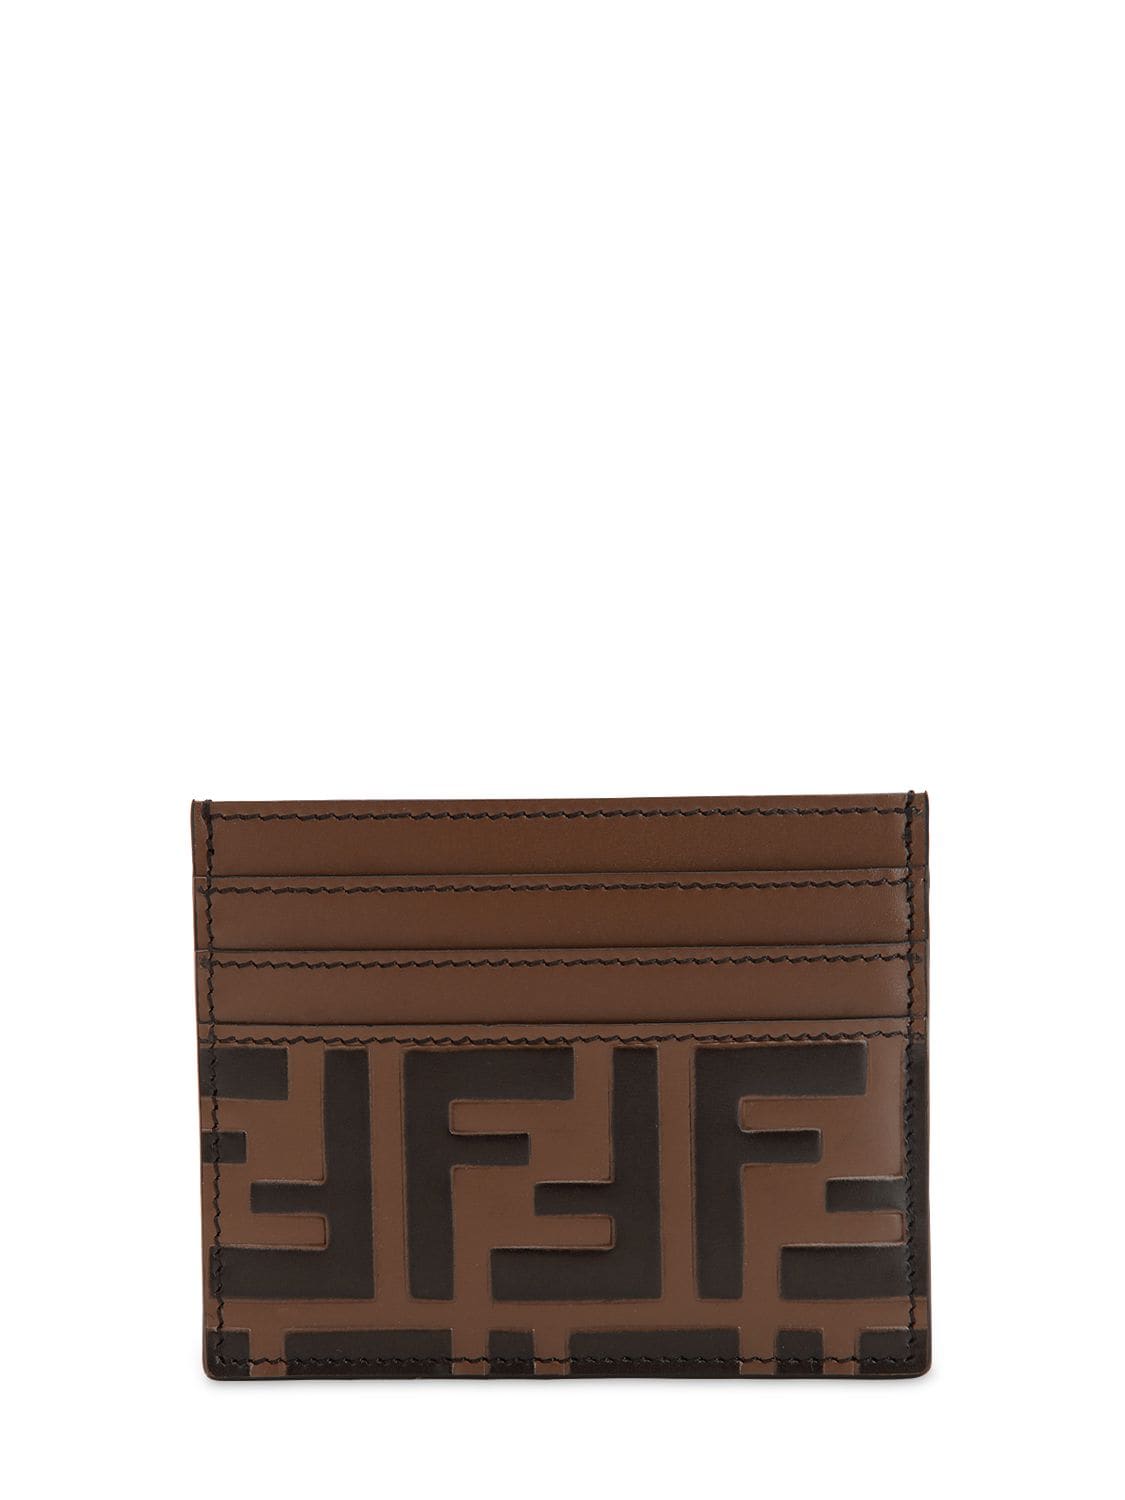 FENDI FF压纹皮革卡包,68IDNU058-RJBIM0M1